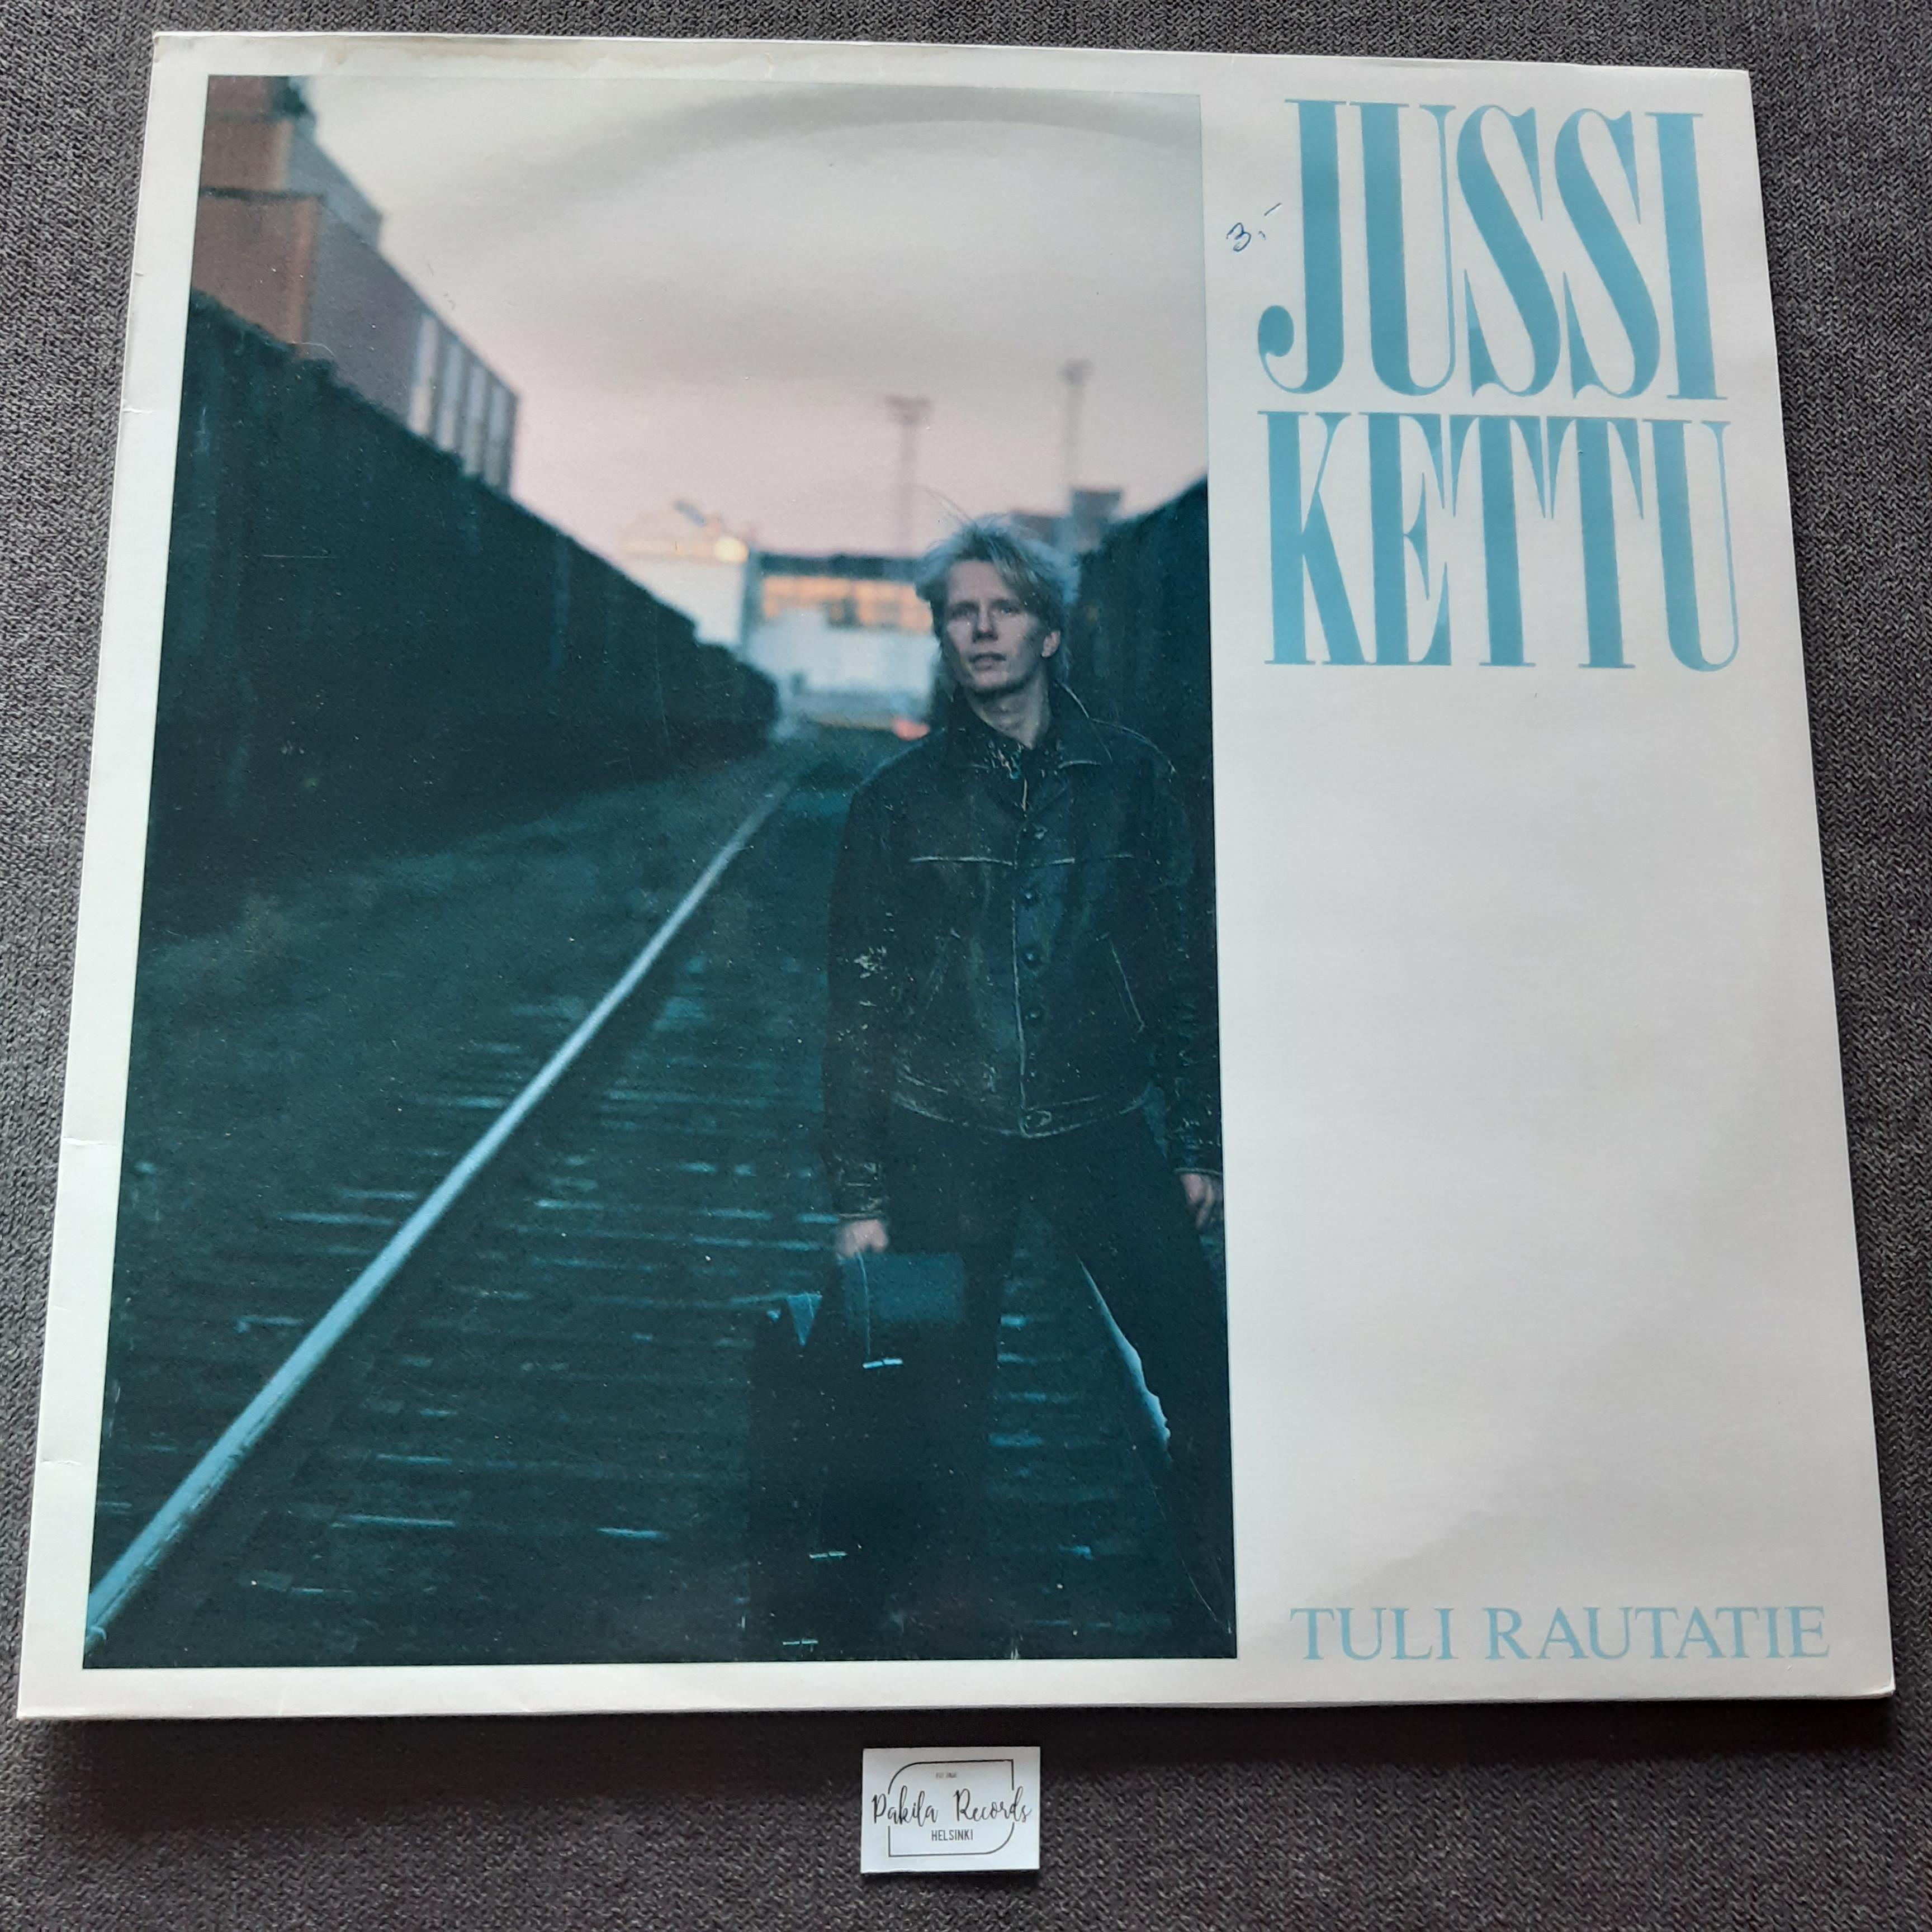 Jussi Kettu - Tuli rautatie - LP (käytetty)